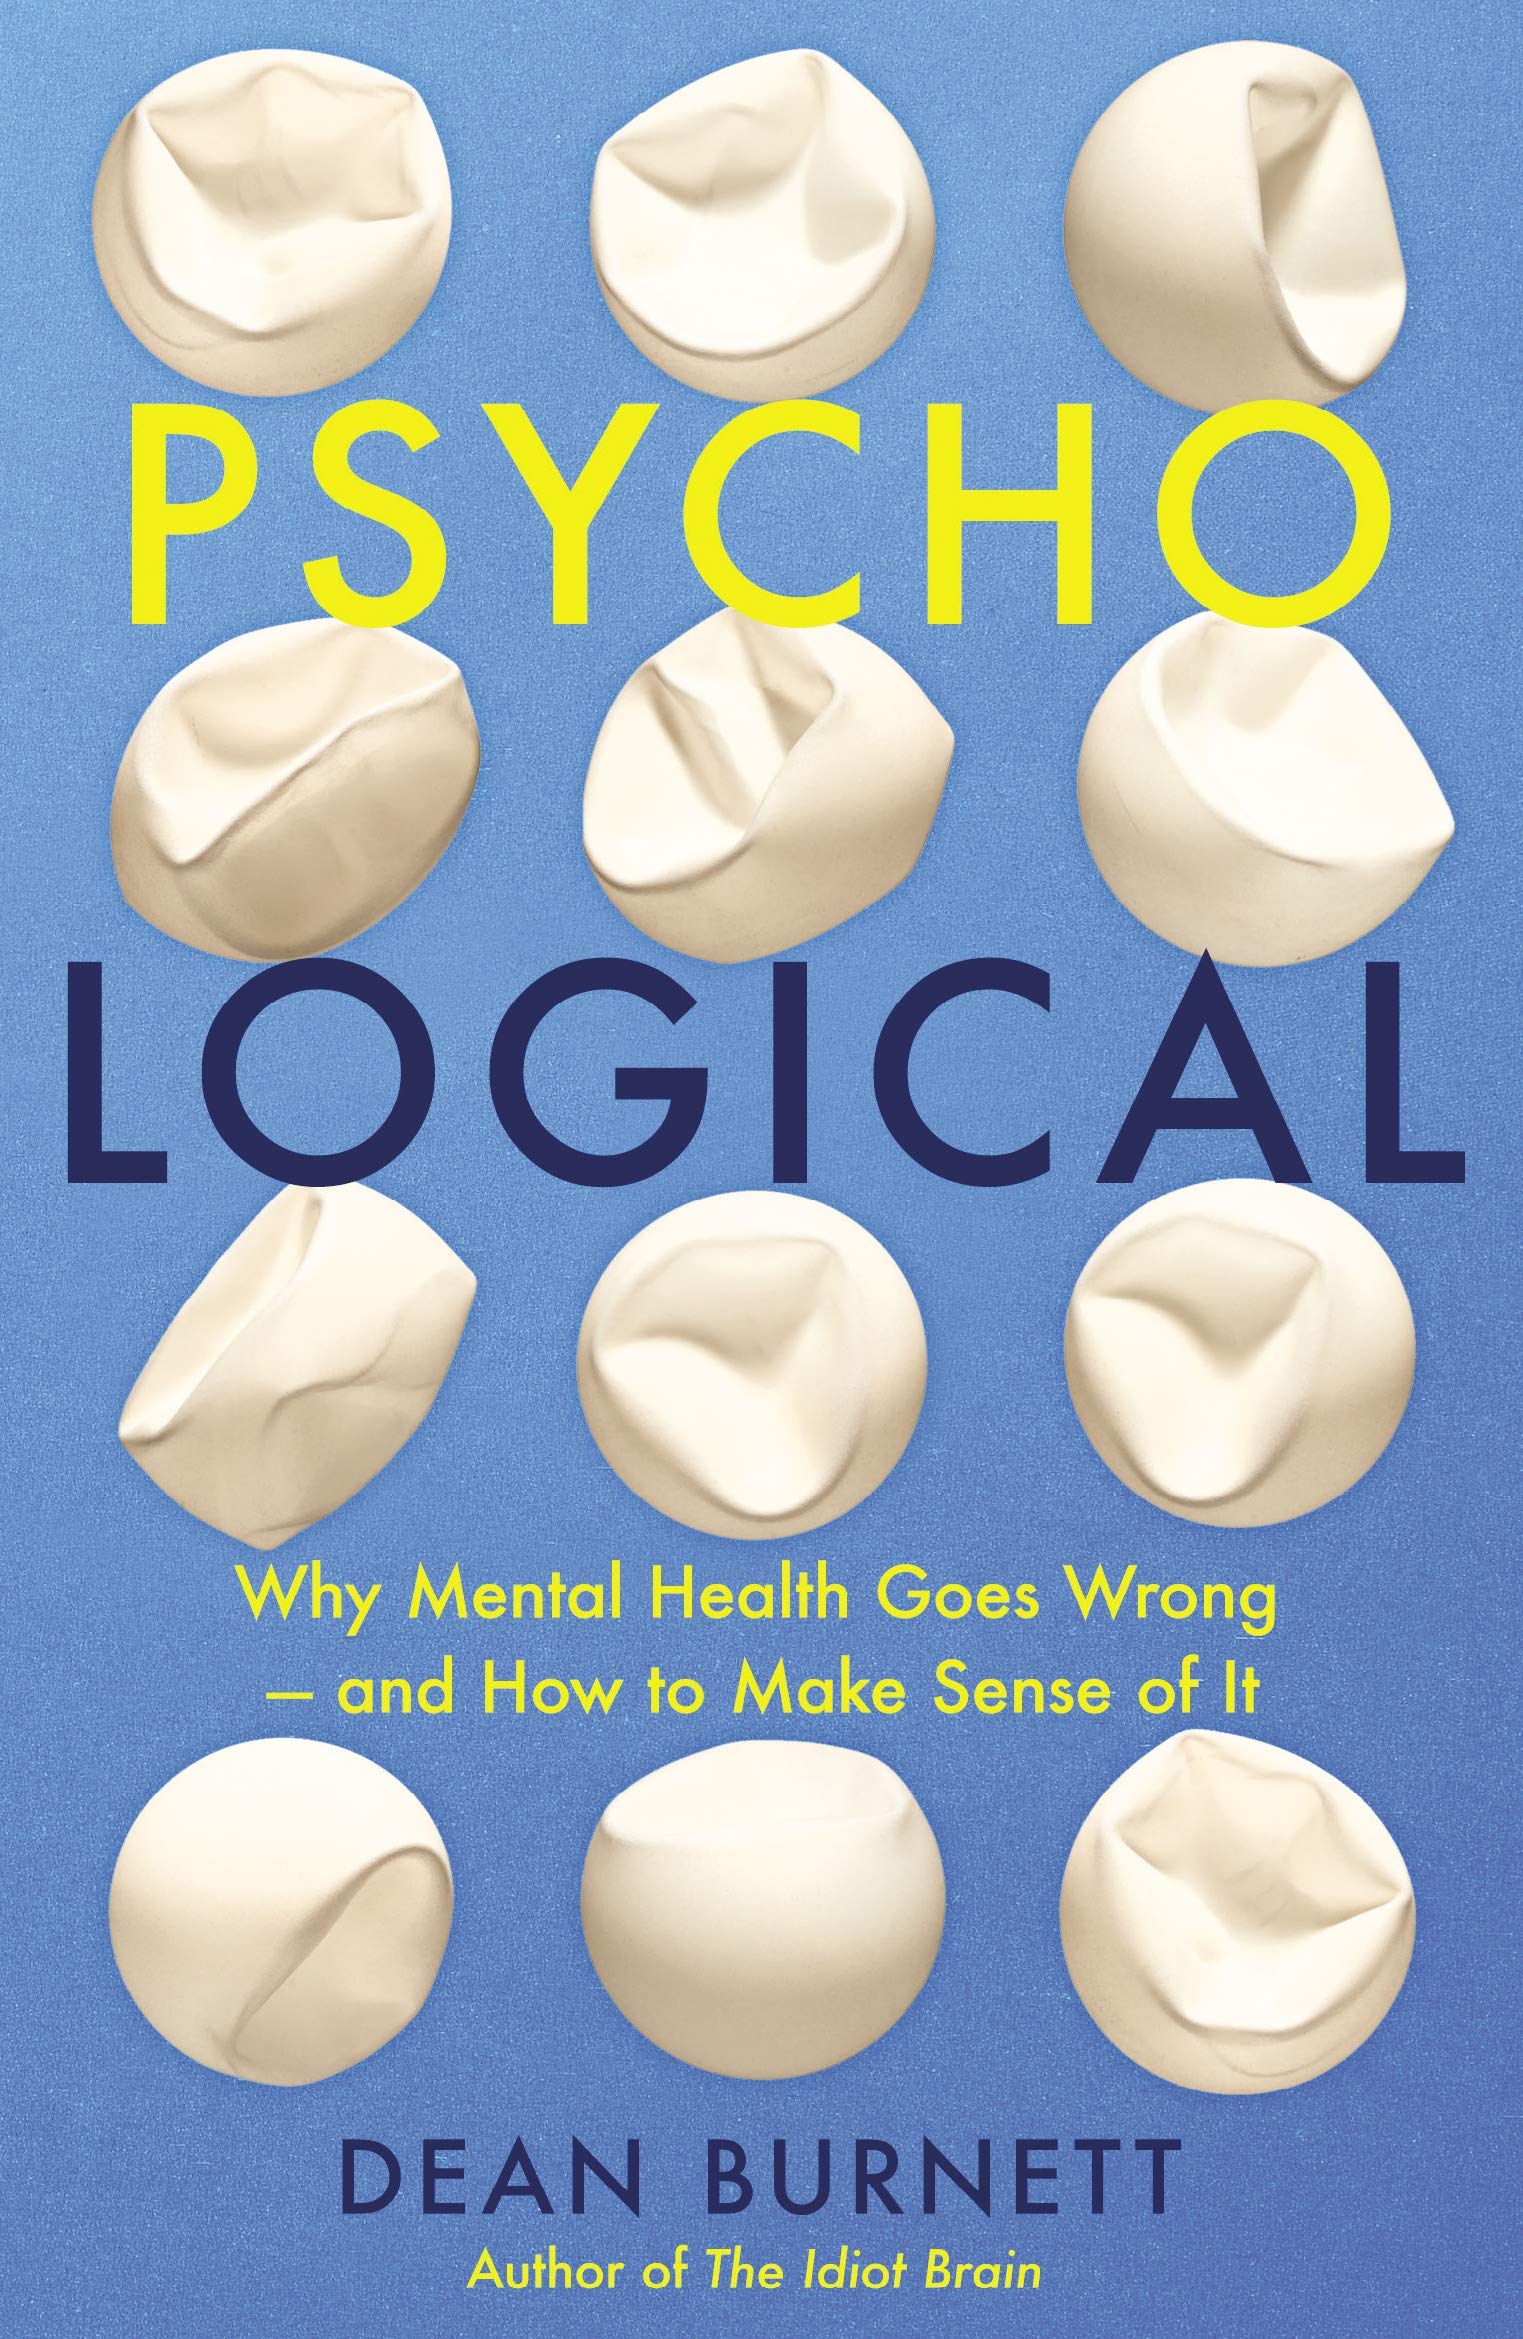 Psycho-Logical | Dean Burnett